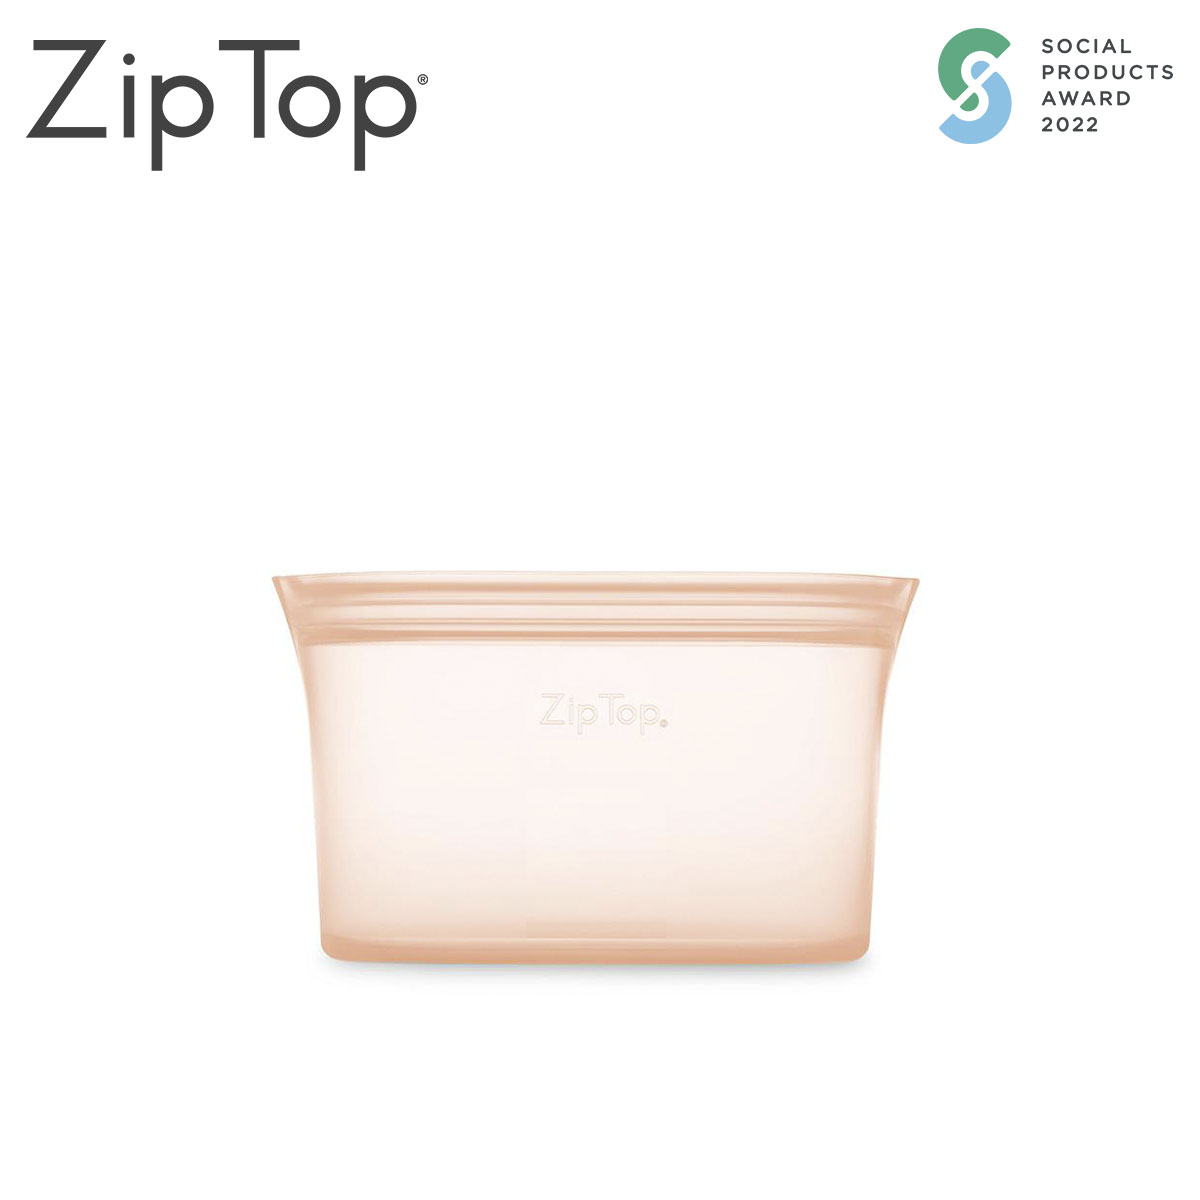 ZipTop シリコン製保存容器 ディッシュ S 473ml 食洗機対応 ピーチ